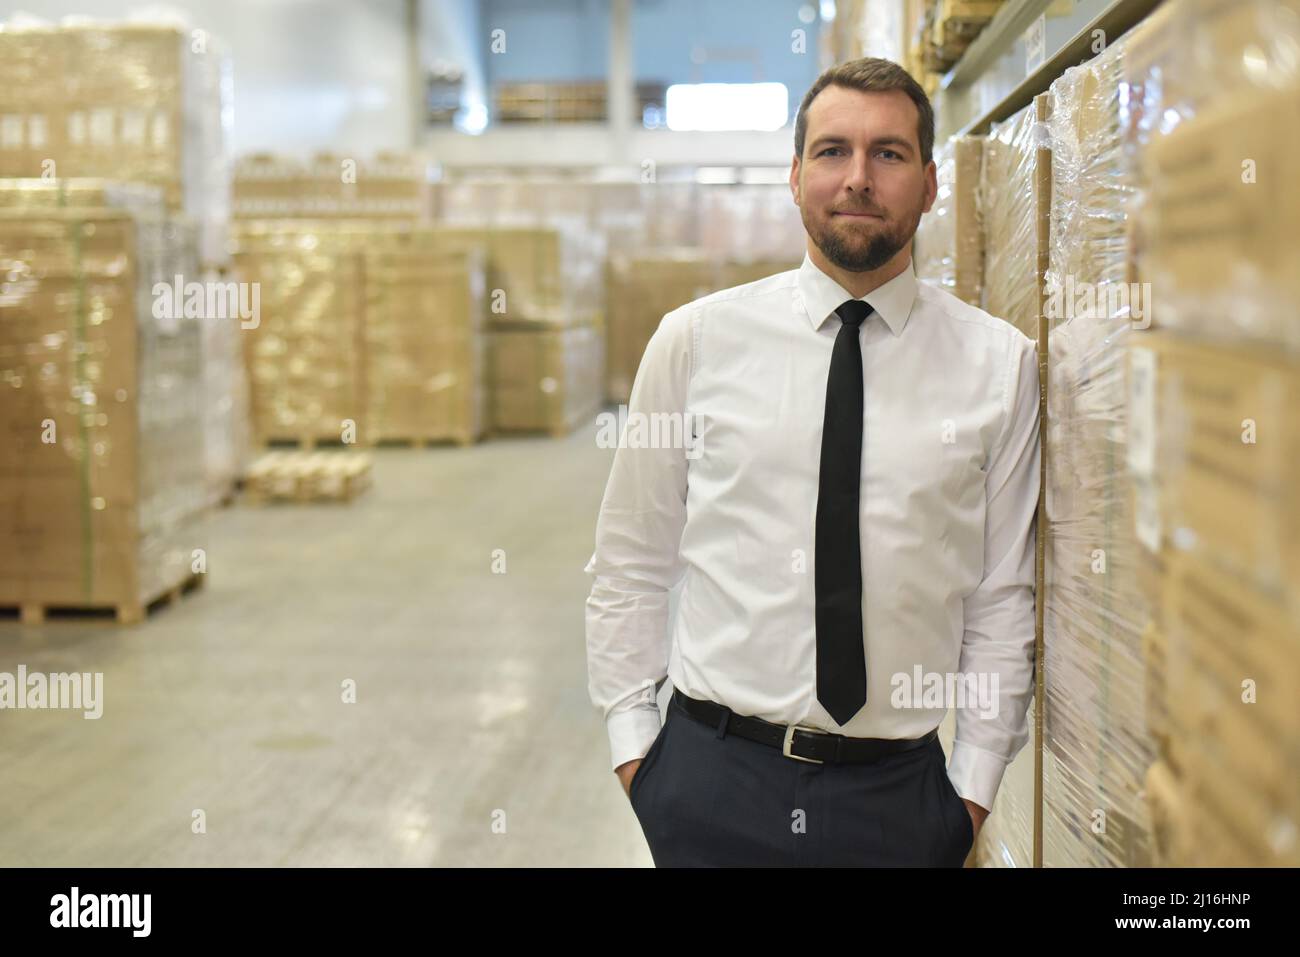 Portrait freundlicher Geschäftsmann/Manager im Anzug, der im Lager eines Unternehmens arbeitet Stockfoto